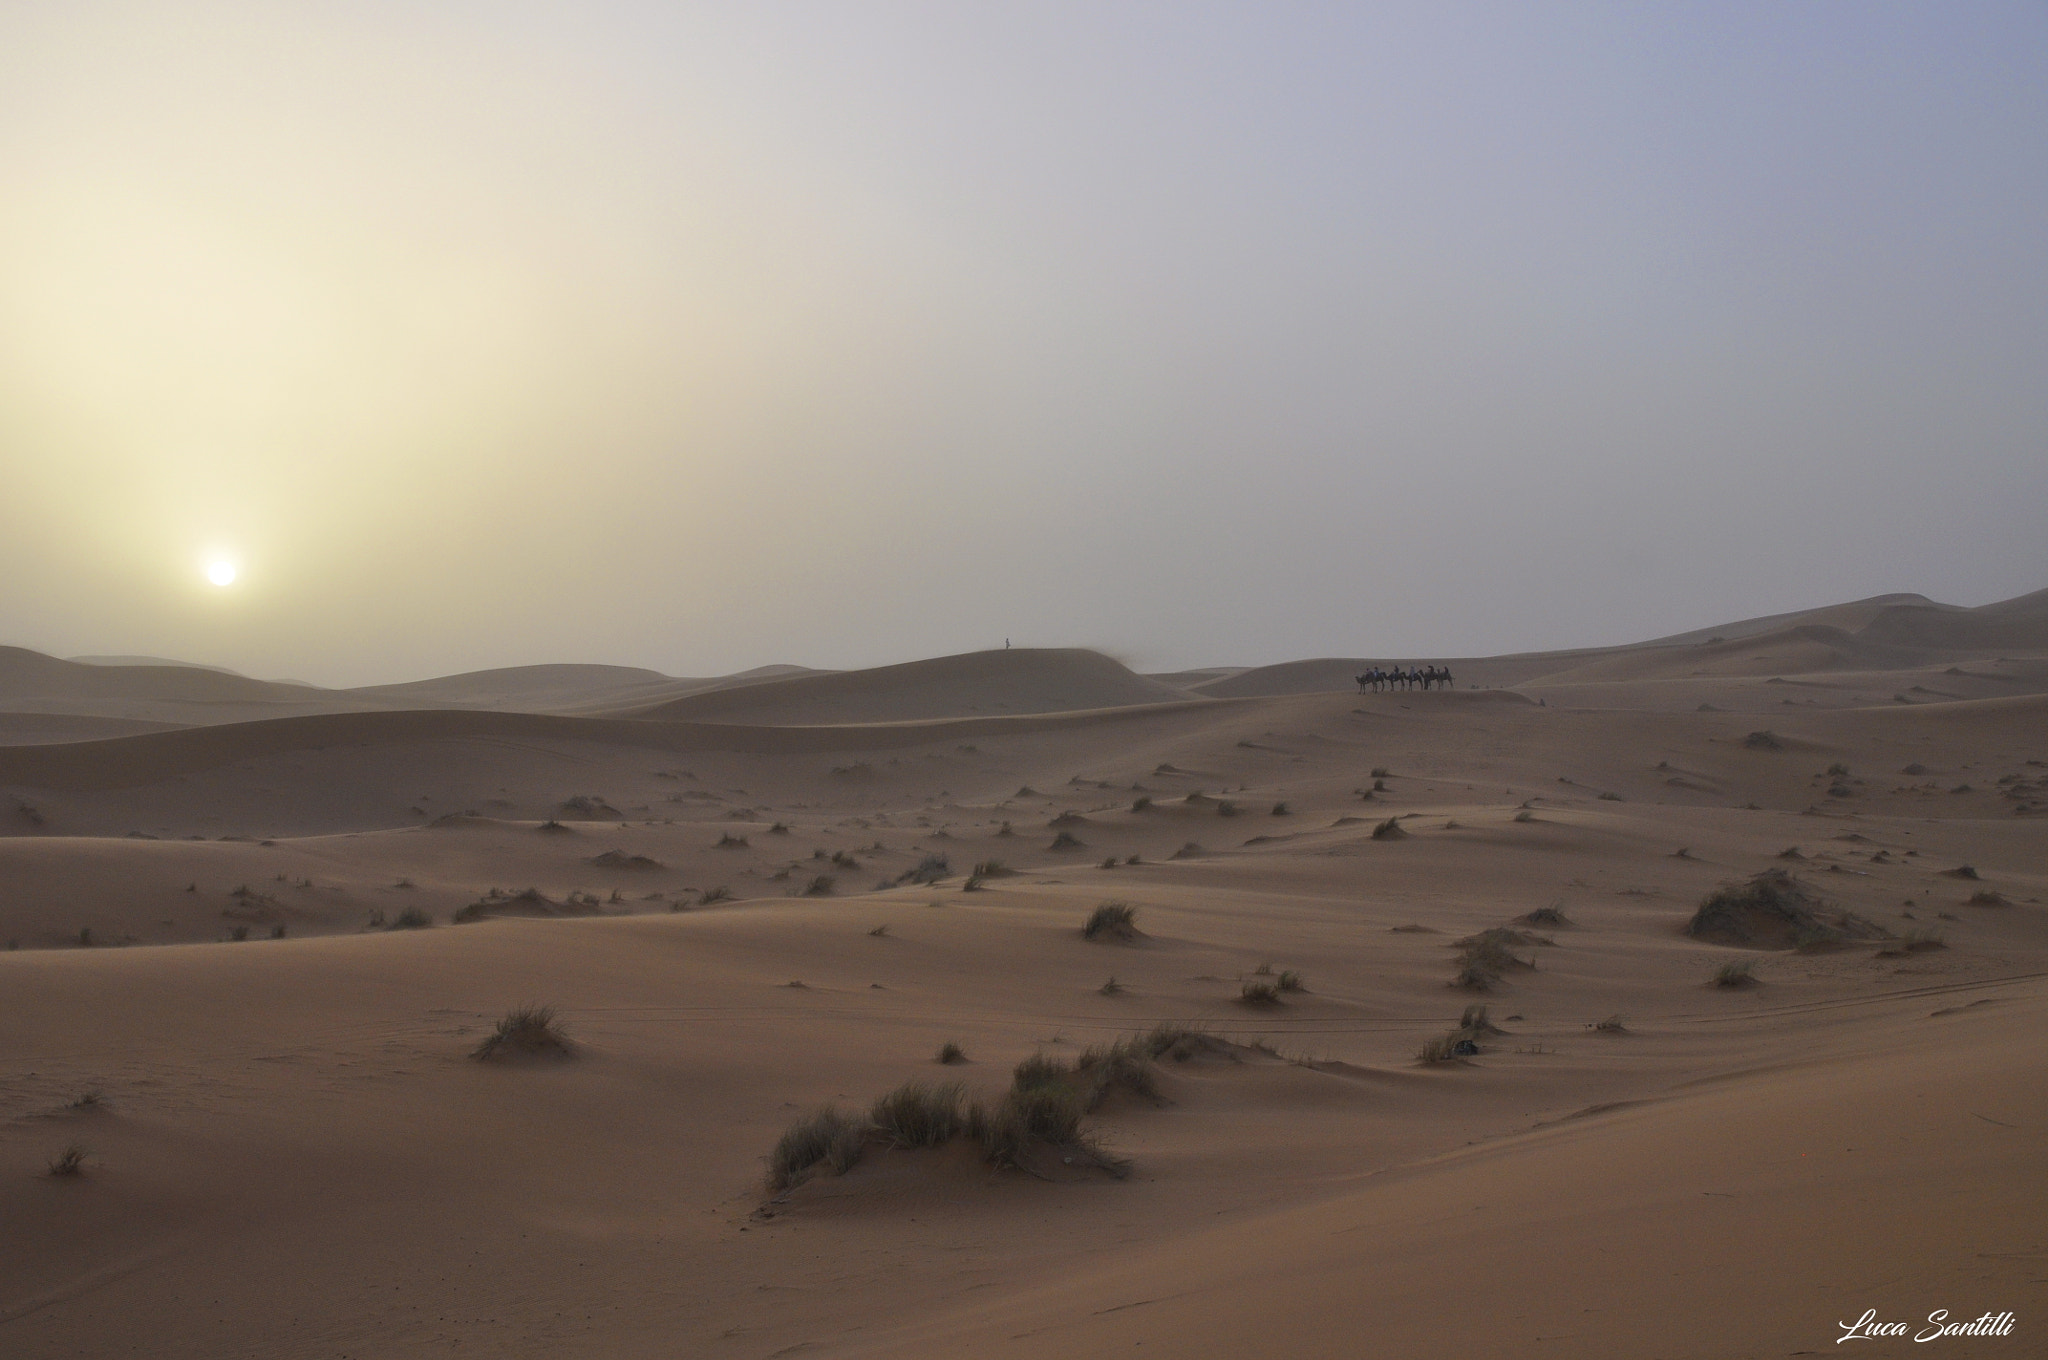 Nikon D5000 + Sigma 17-70mm F2.8-4 DC Macro OS HSM | C sample photo. La luce del tramonto sulle dune del deserto photography